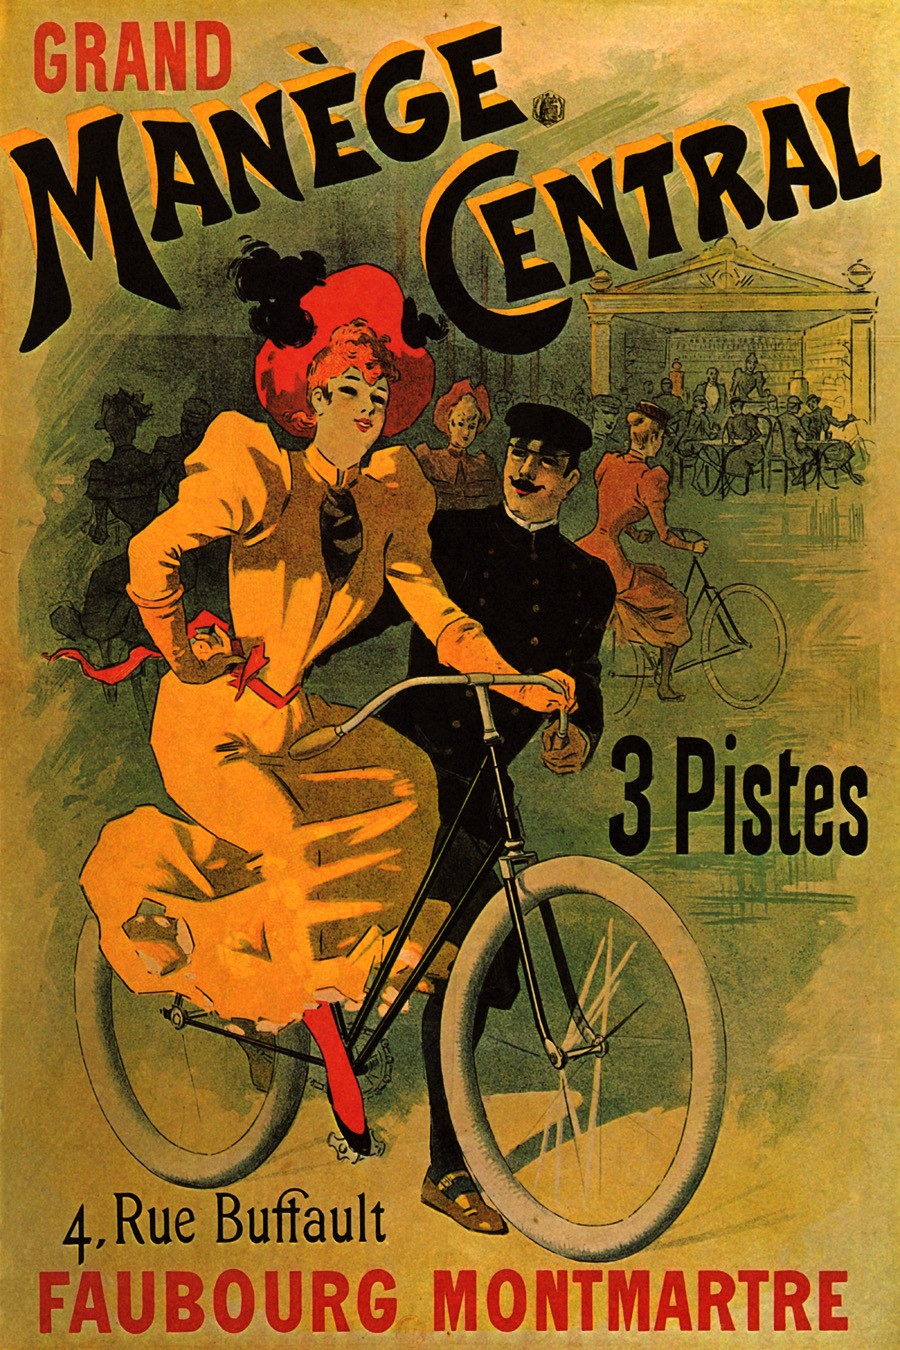 Foto 1 - Manege Central Montmartre Paris Garota Bicicleta Vintage Cartaz Poster em Papel Matte 